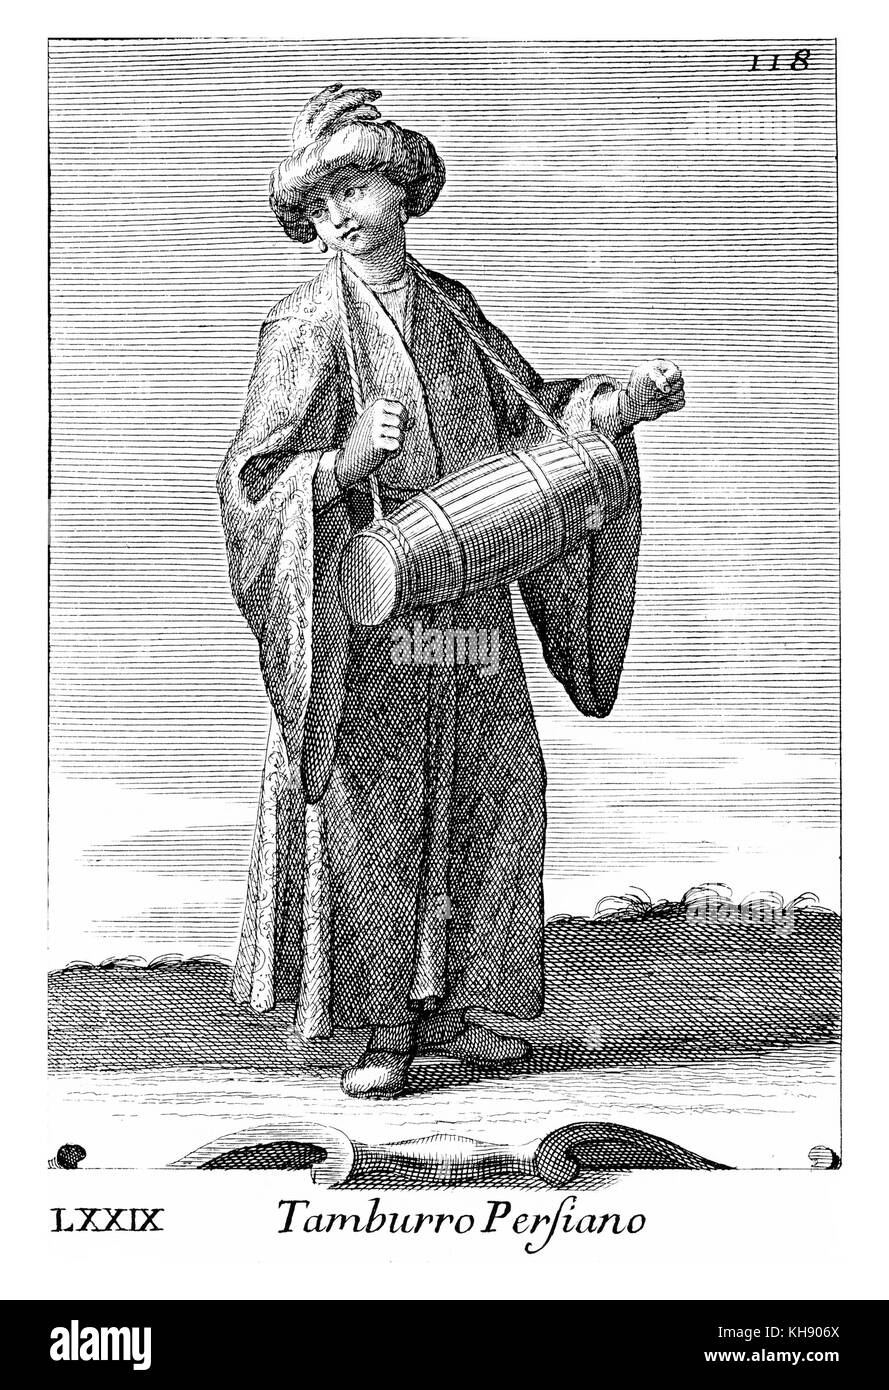 Petit homme jouant (persan) baril tambour, joué avec les mains. Illustration de Filippo Bonanni's "Gabinetto Armonico" publié en 1723, l'Illustration 79. Gravure par Arnold van Westerhout. Sous-titre suivant Tamburro Persiano. Banque D'Images